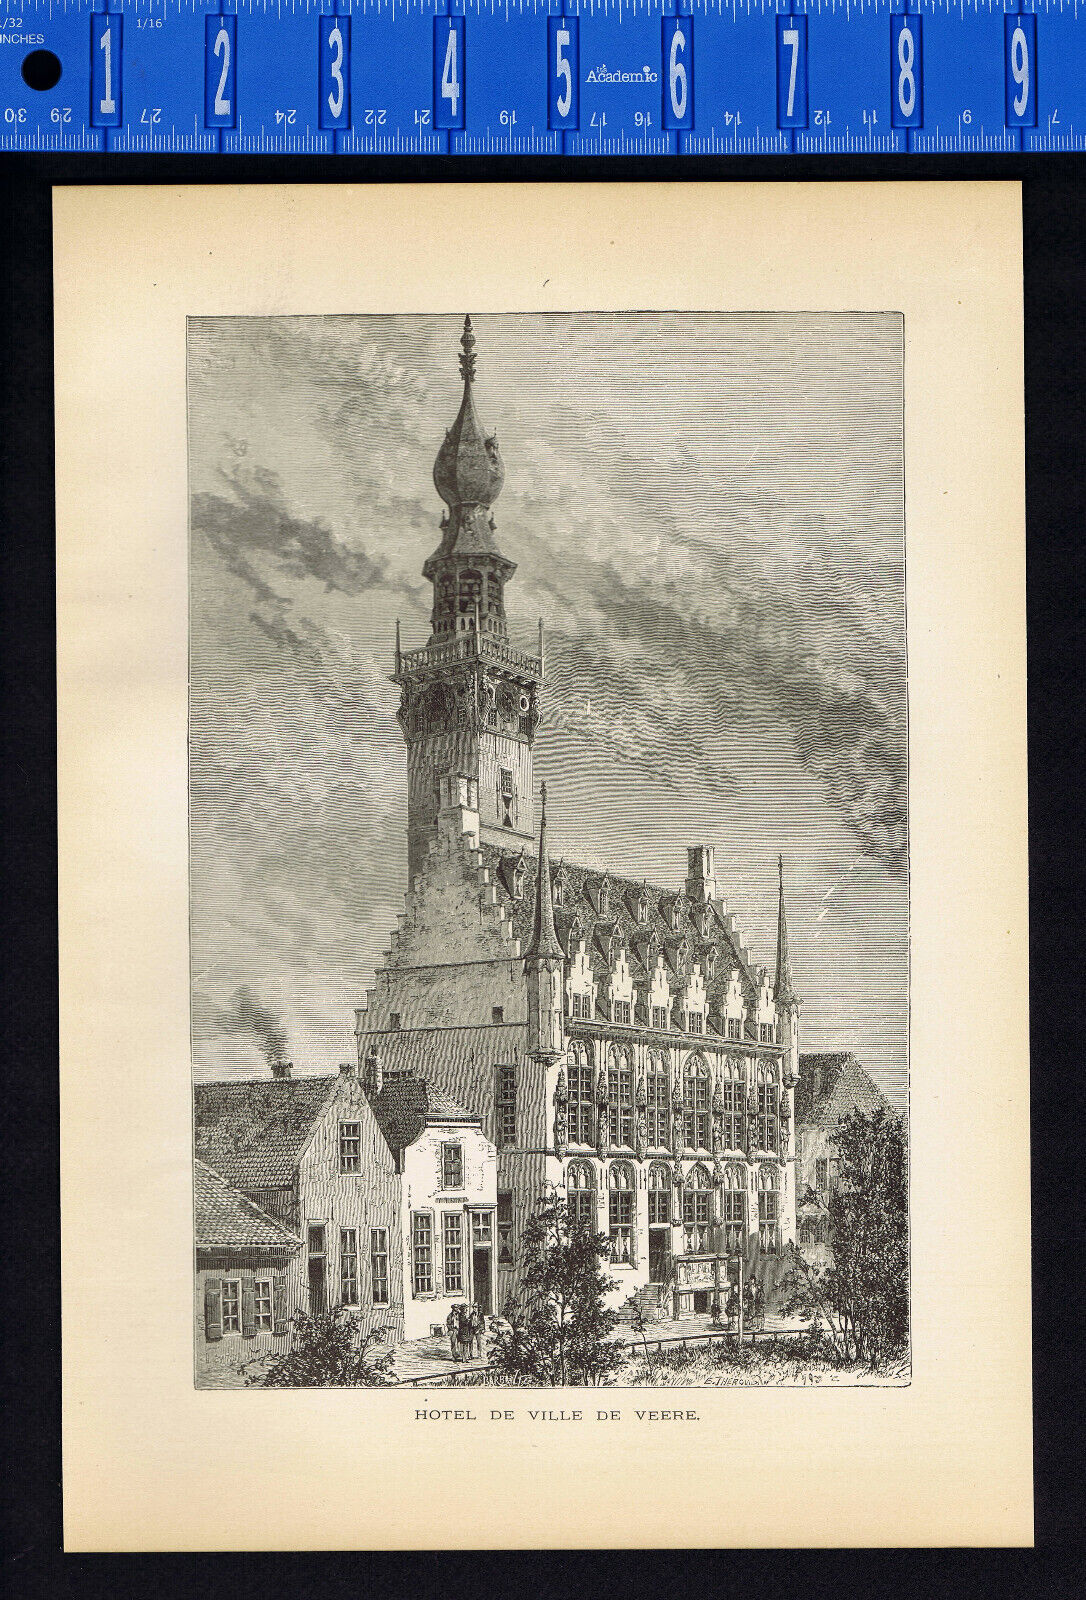 Hotel de Ville de Veere Town Hall Netherlands Walcheren Zeeland - 1887 Print